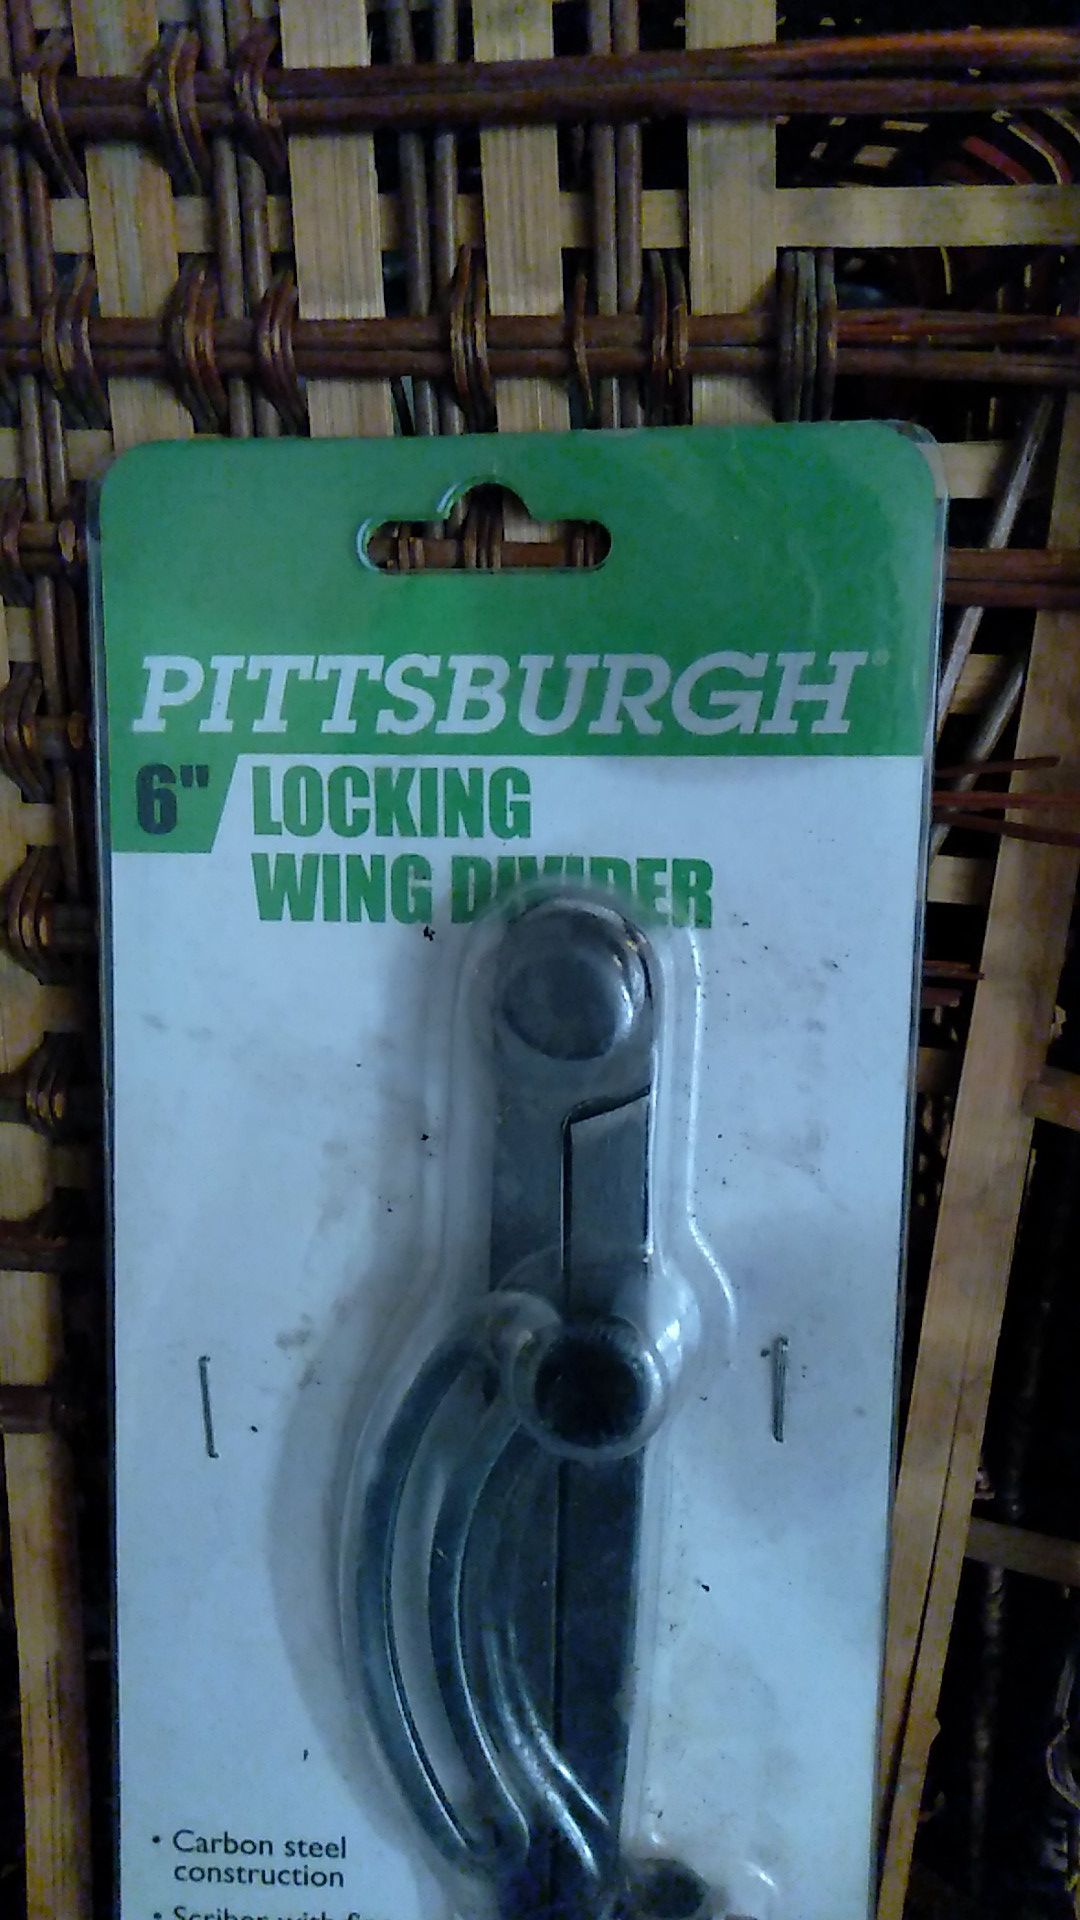 Locking wing divider